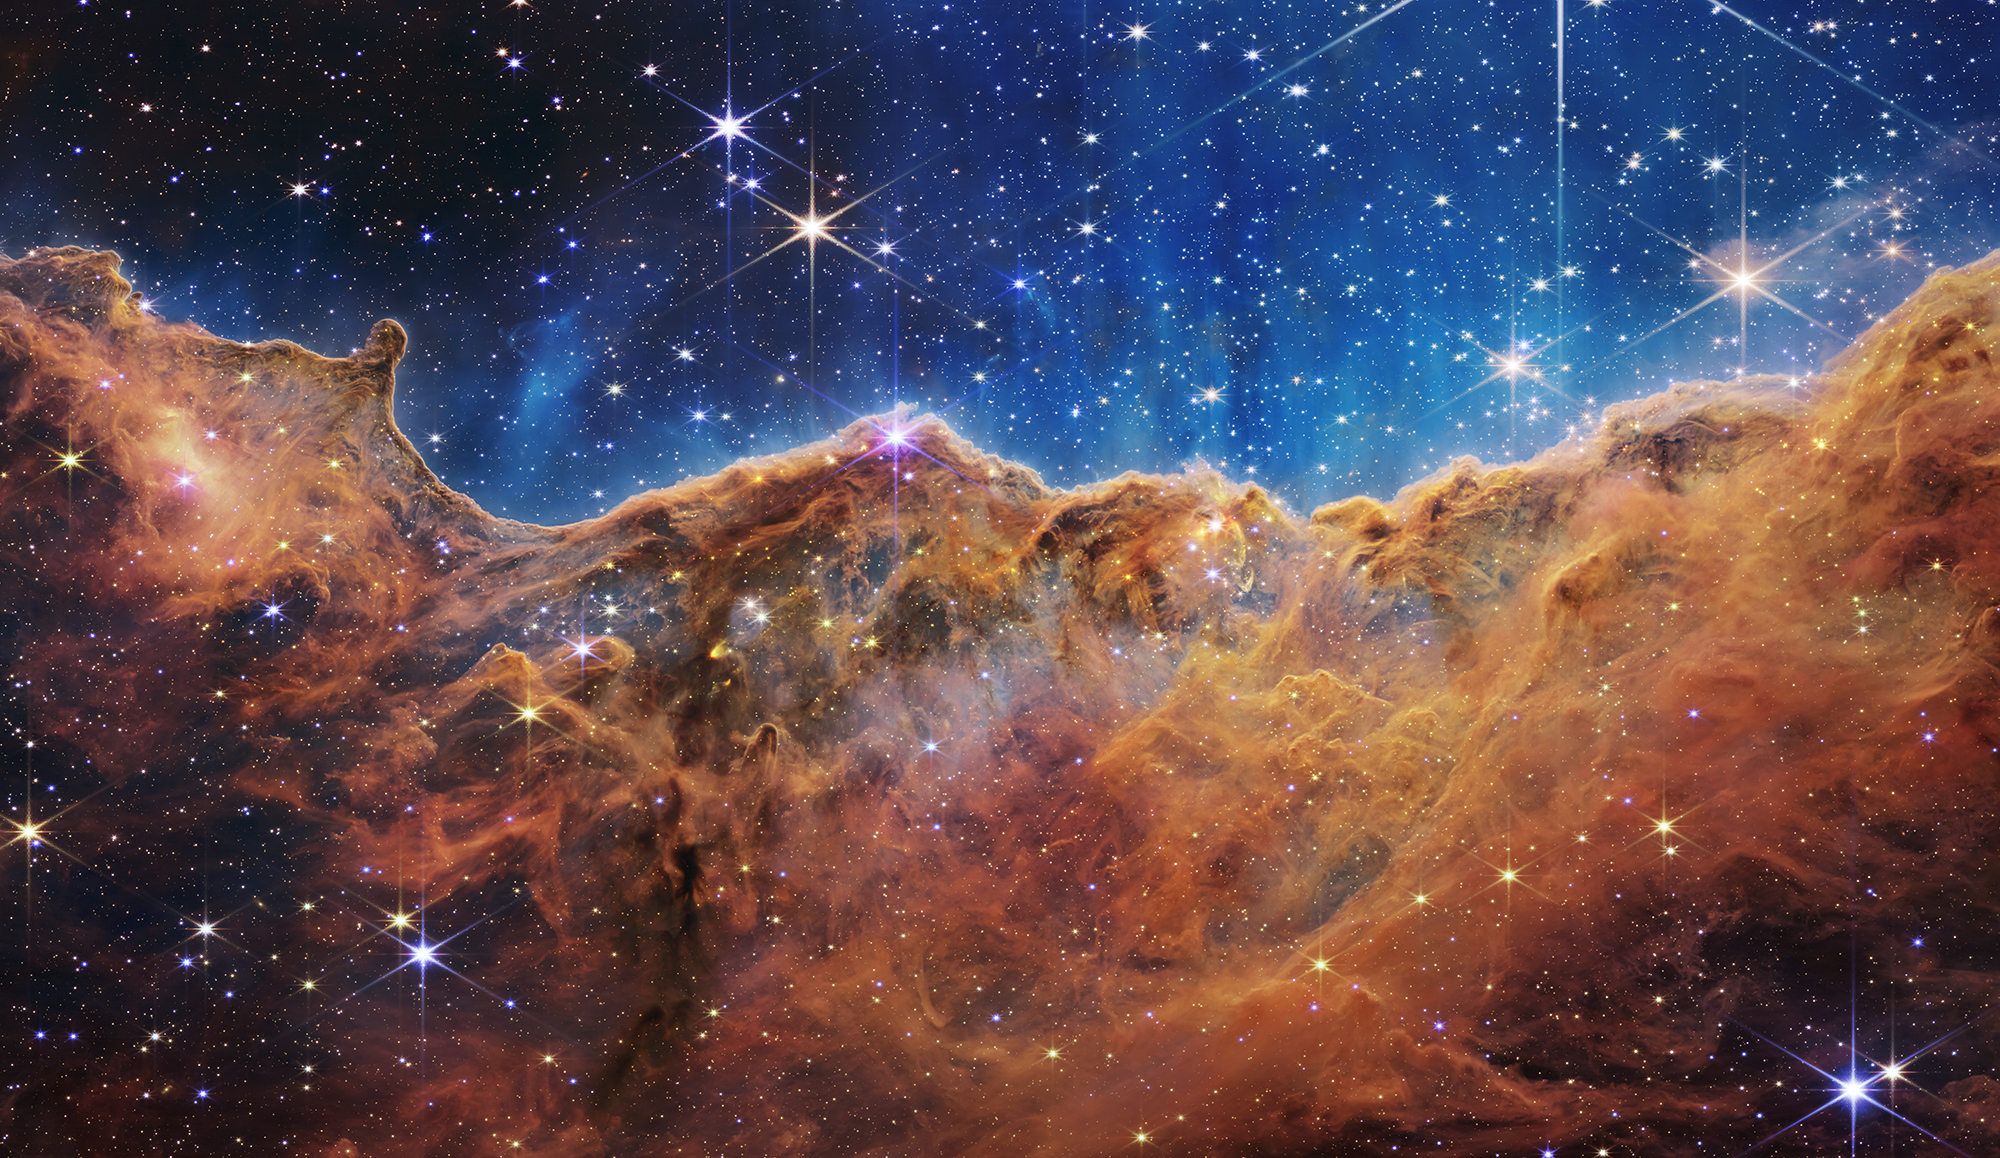 Kính thiên văn James Webb: Với kính thiên văn James Webb, chúng ta đã có được những bức hình chưa từng có của vũ trụ. Tận hưởng những hình ảnh rực rỡ và tuyệt đẹp của các hành tinh và sao trong vũ trụ. Đừng bỏ lỡ cơ hội là một trong những người đầu tiên ngắm nhìn vào những bức hình này.